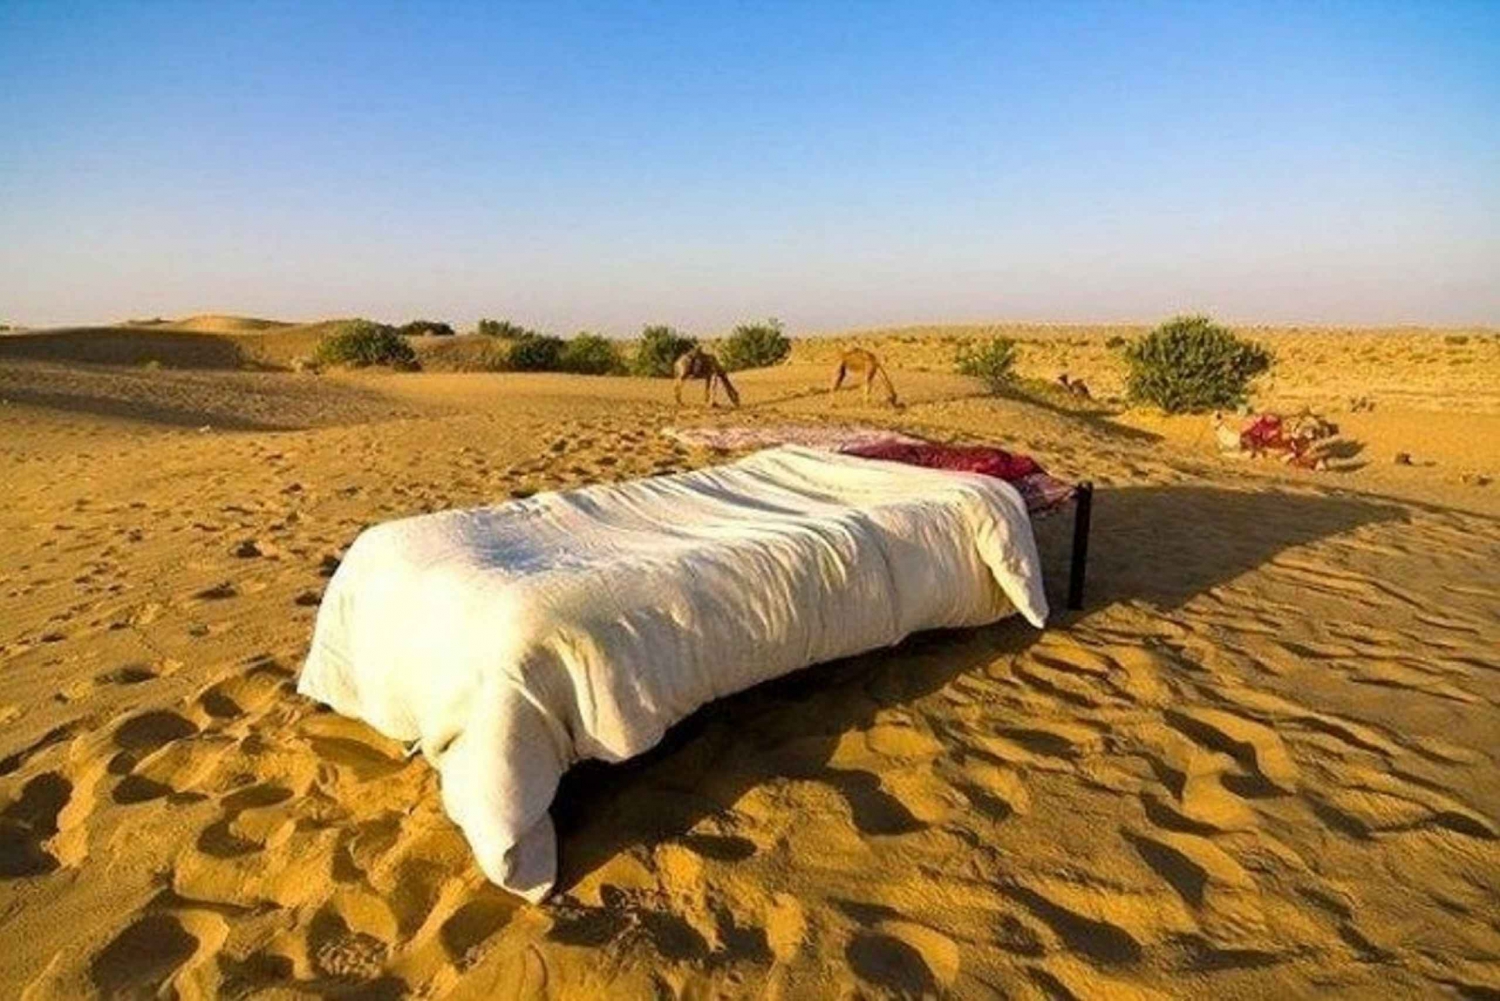 Z Jaisalmer: Nocleg pod gwiazdami z Camel Safari